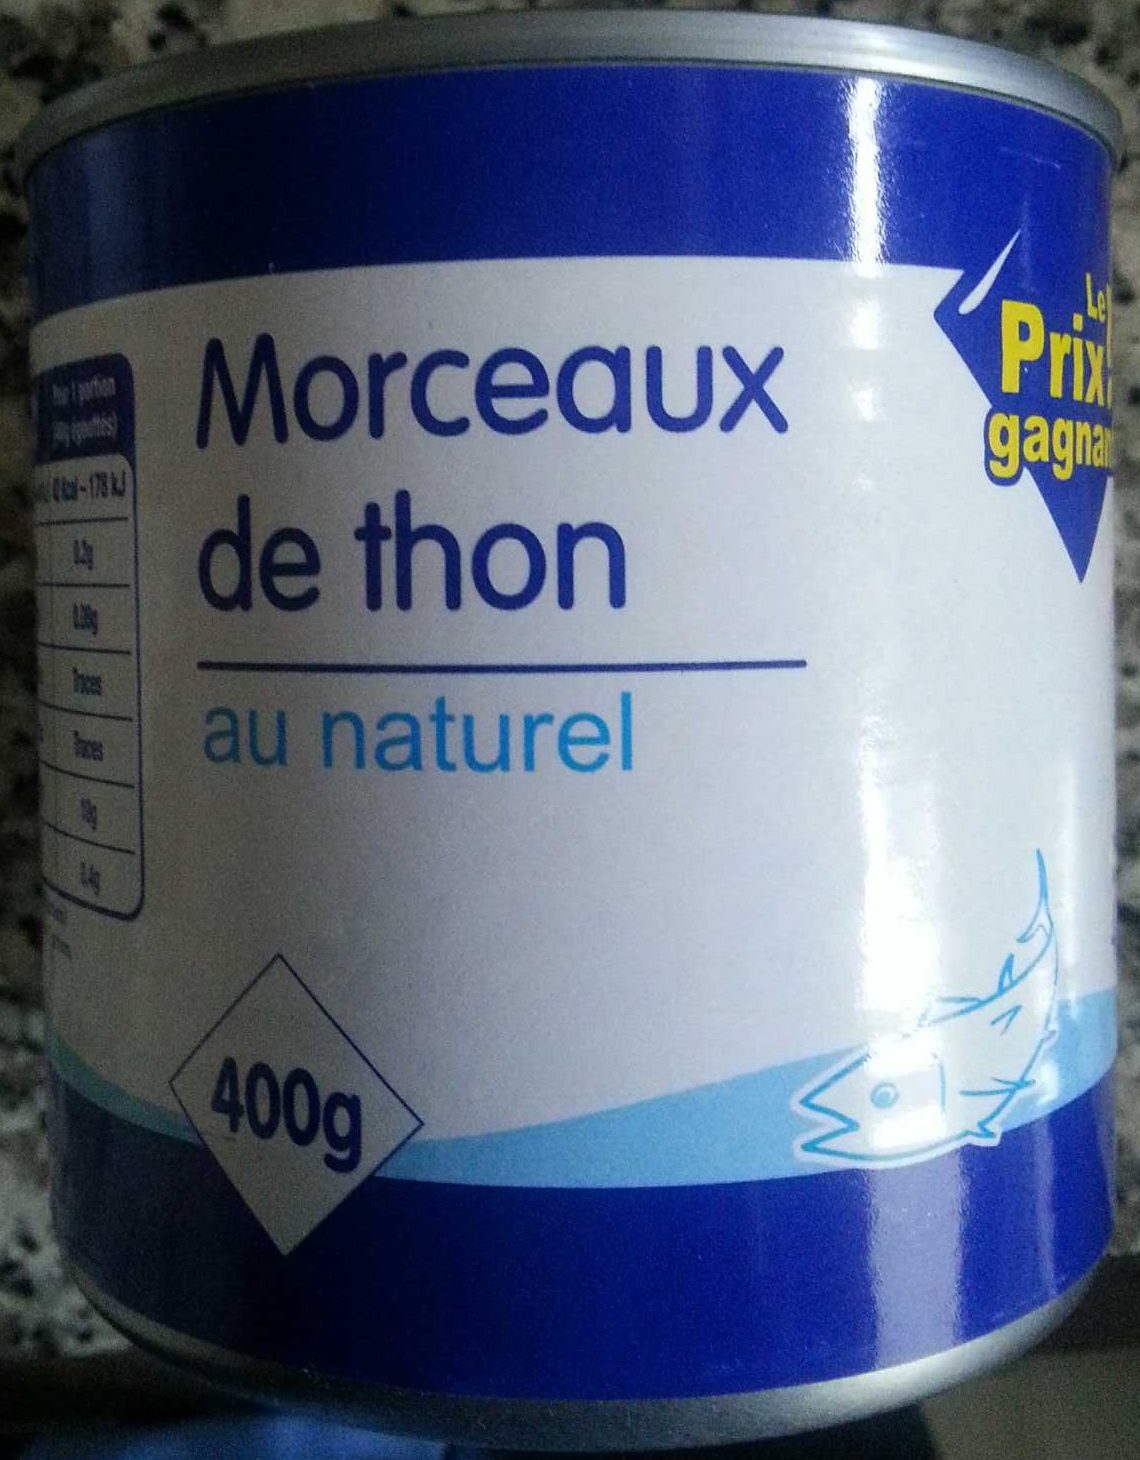 Morceaux de thon au naturel - Produit - fr